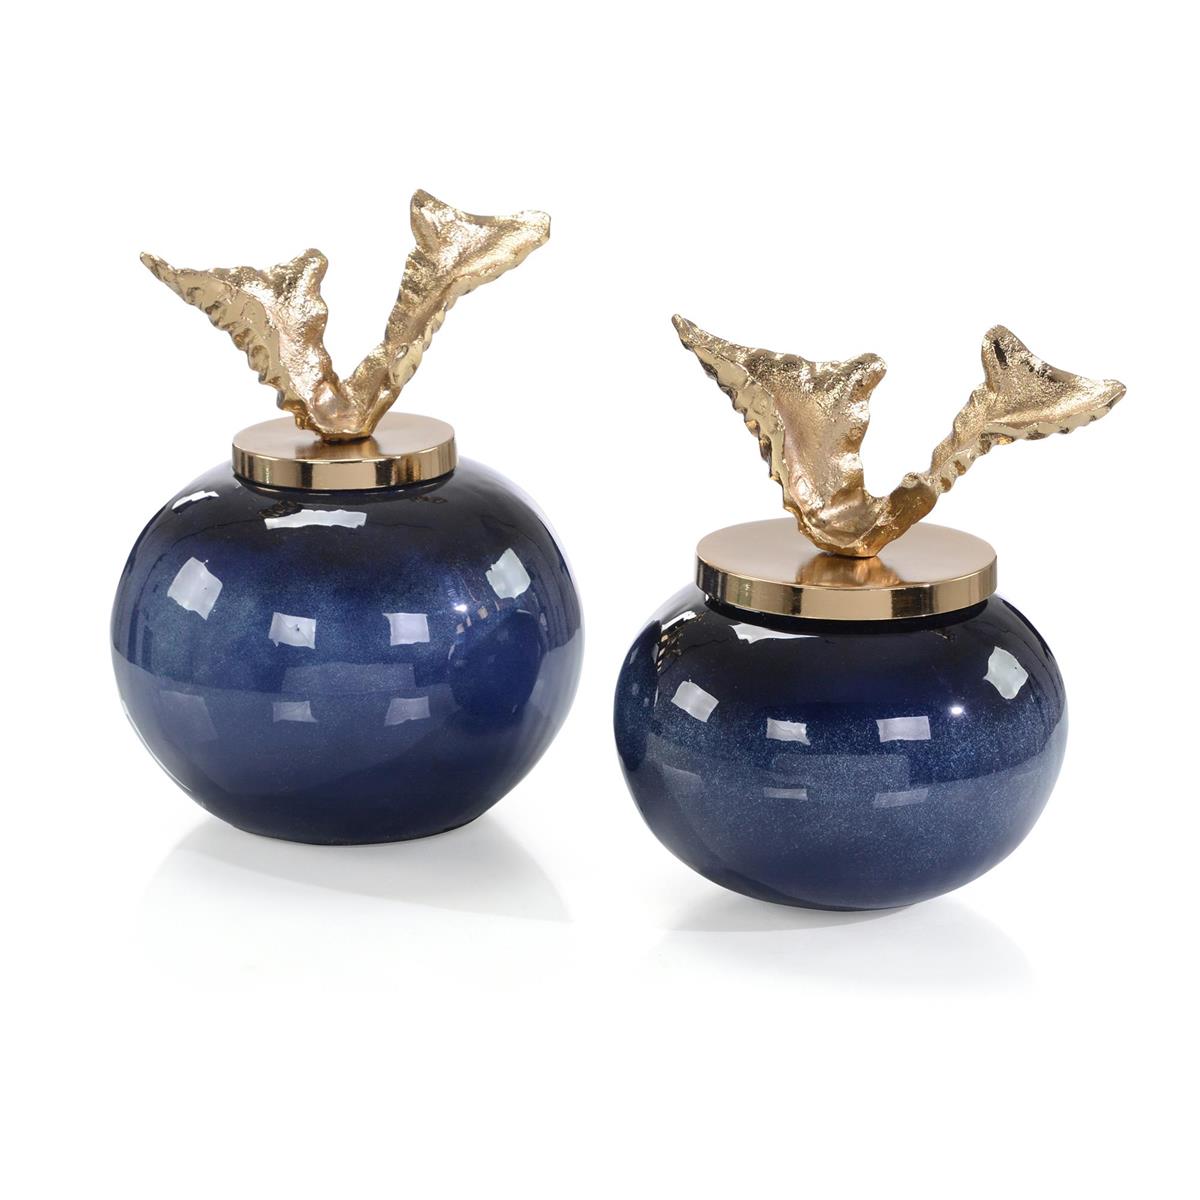 A Set of Two Blueberry Vases-John Richard-JR-JRA-14479S2-Vases-1-France and Son